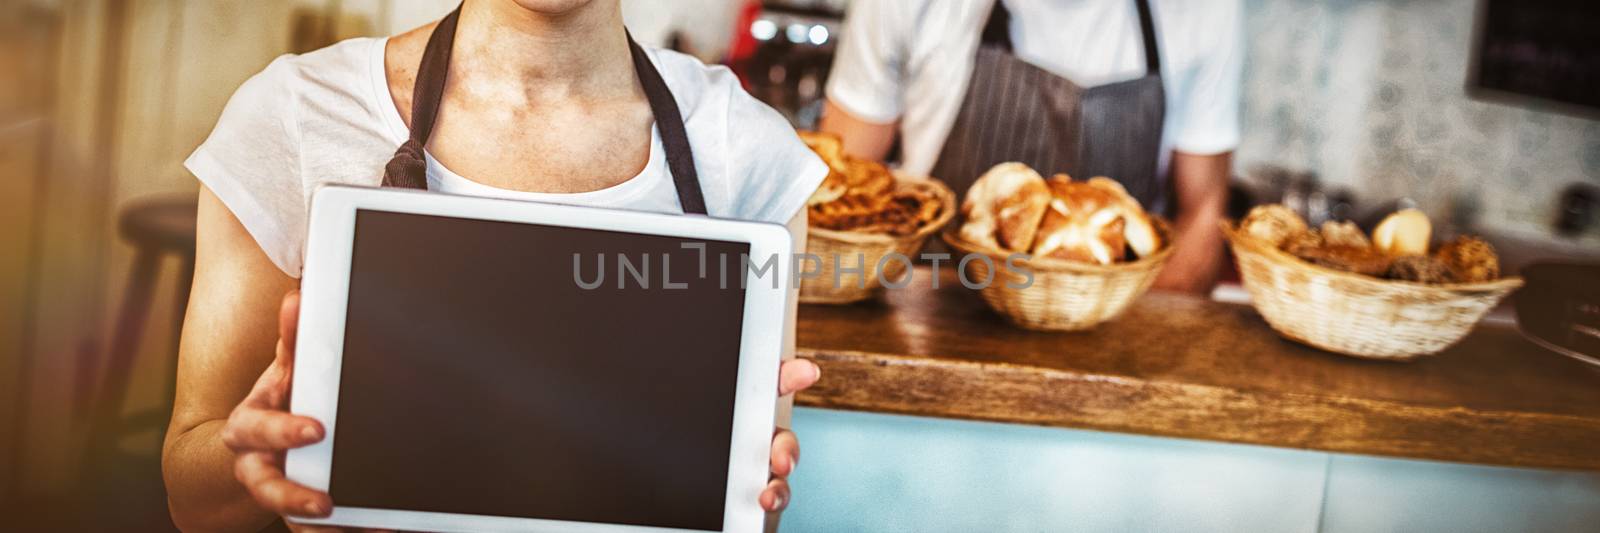 Portrait of woman holding digital tablet at baker shop